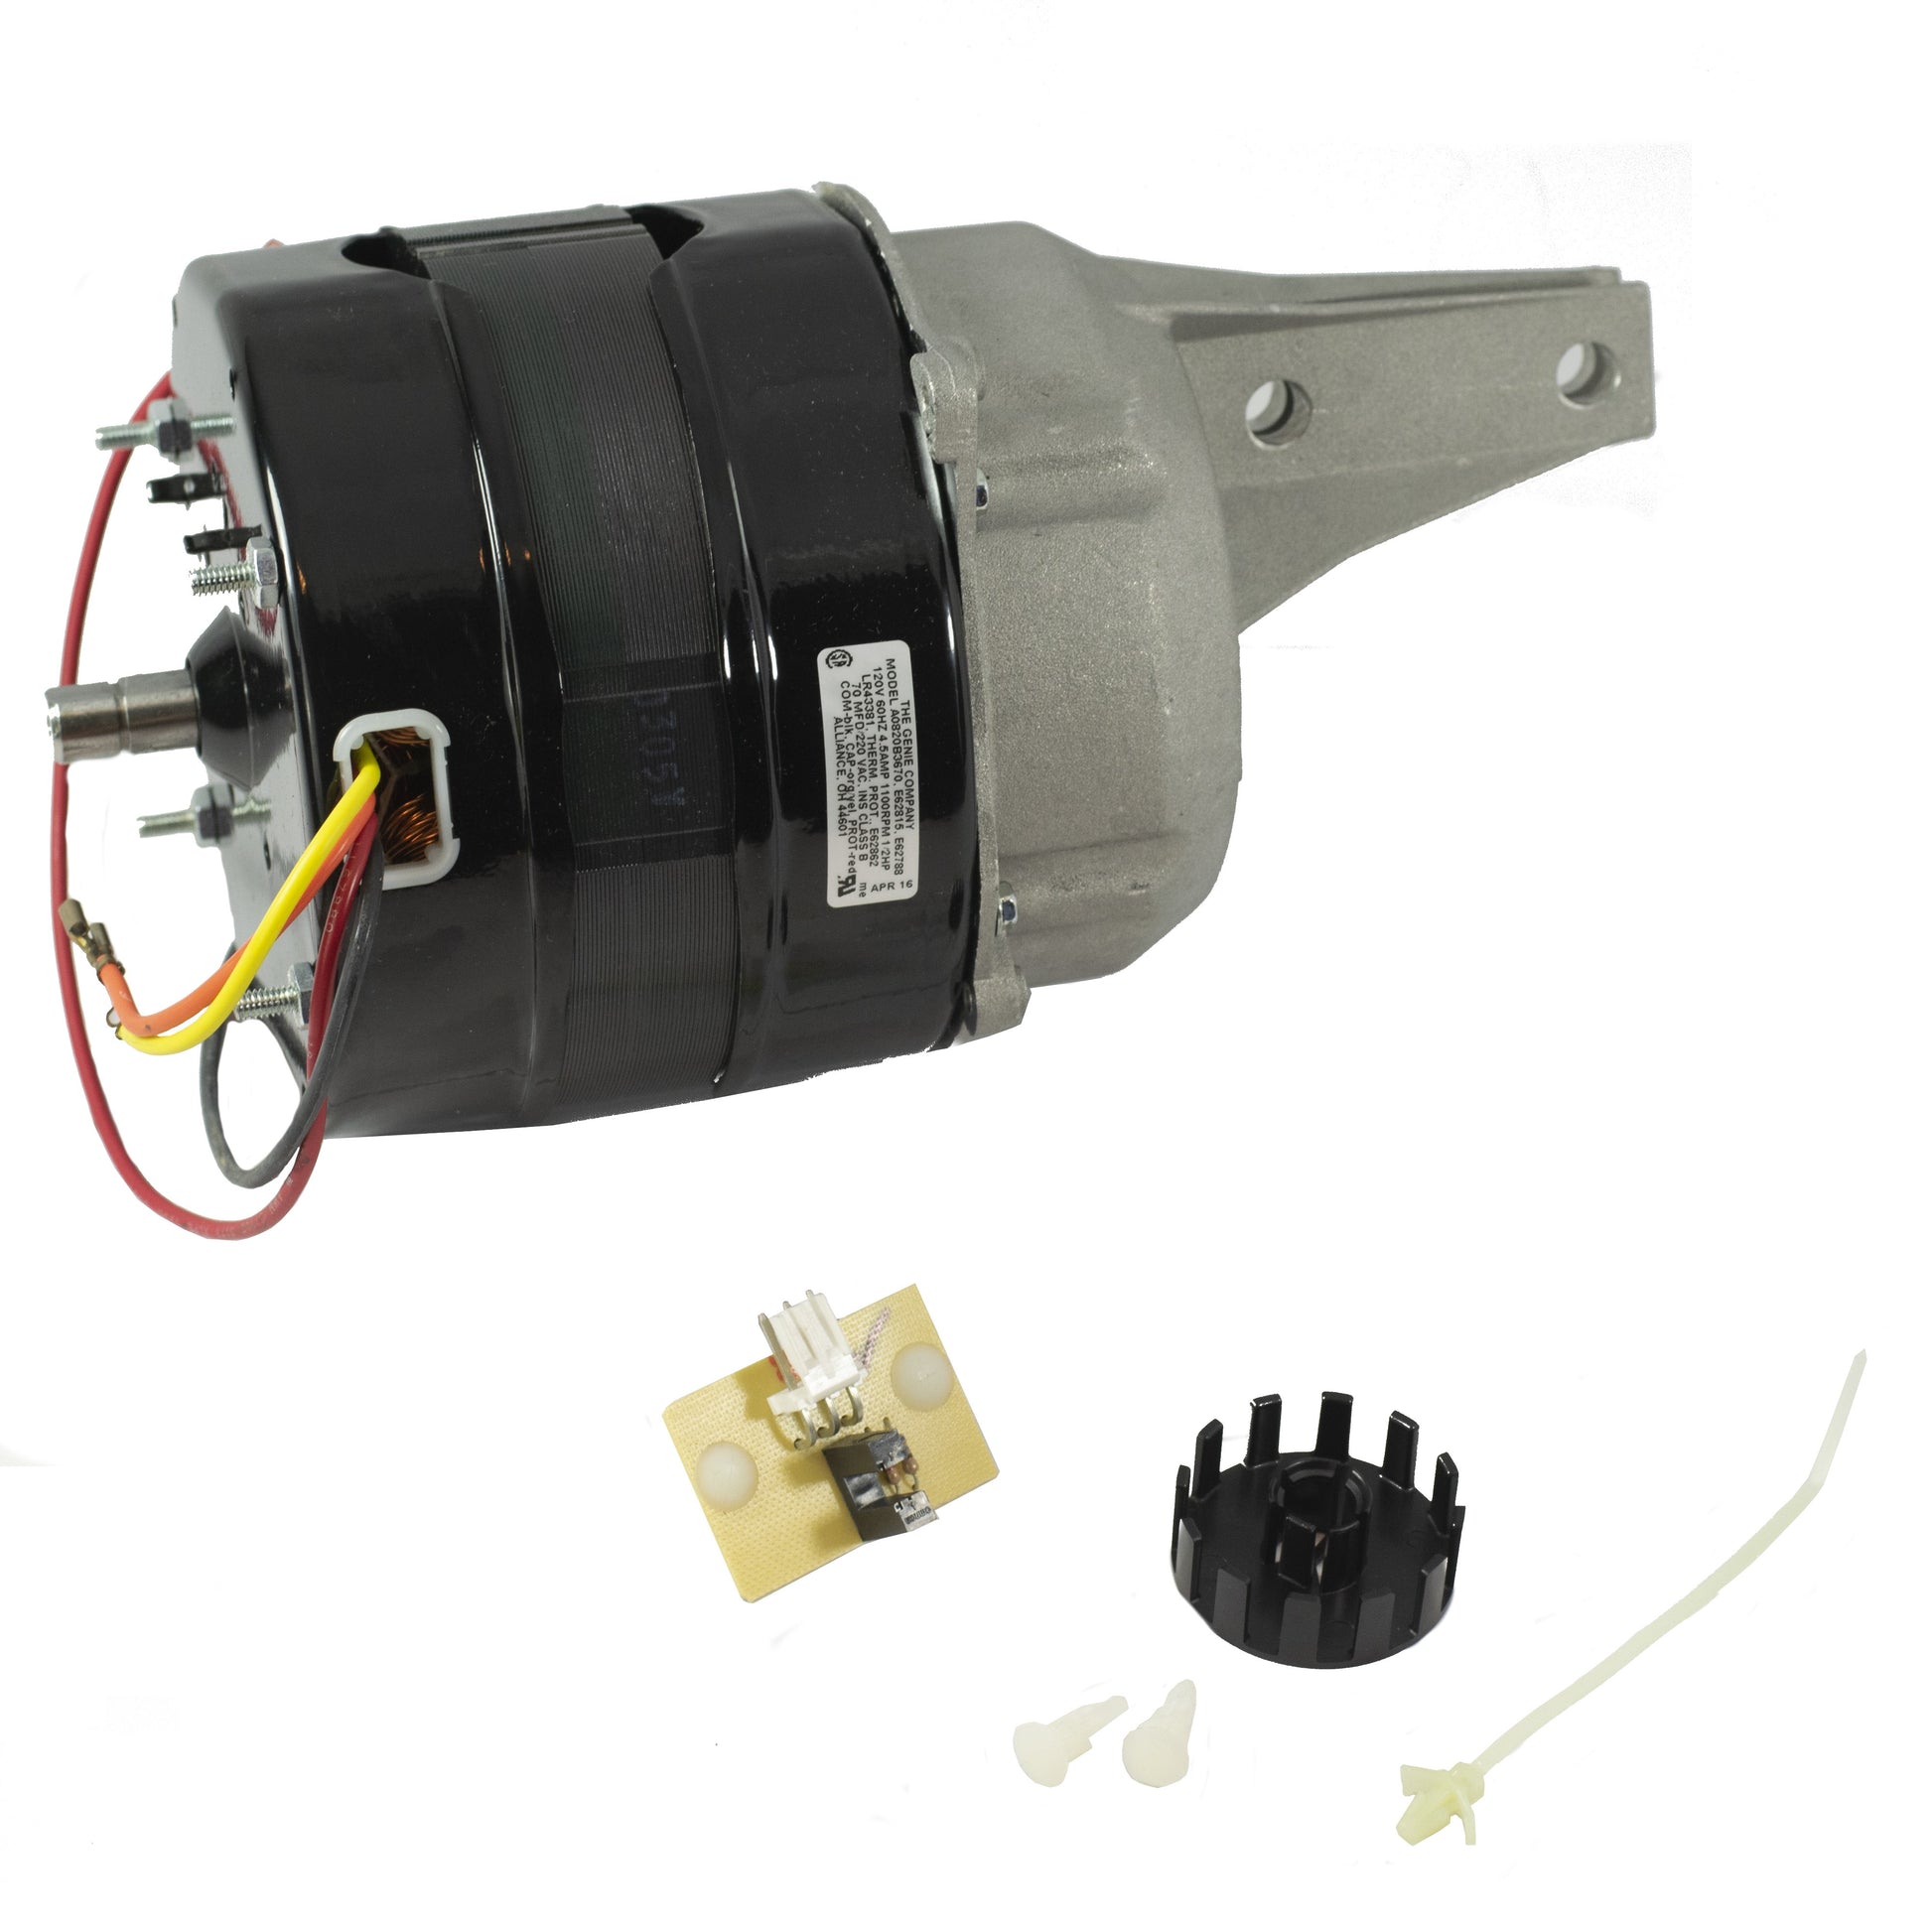 Genie garage door opener replacement motor 41008R.S for AC screw drive models